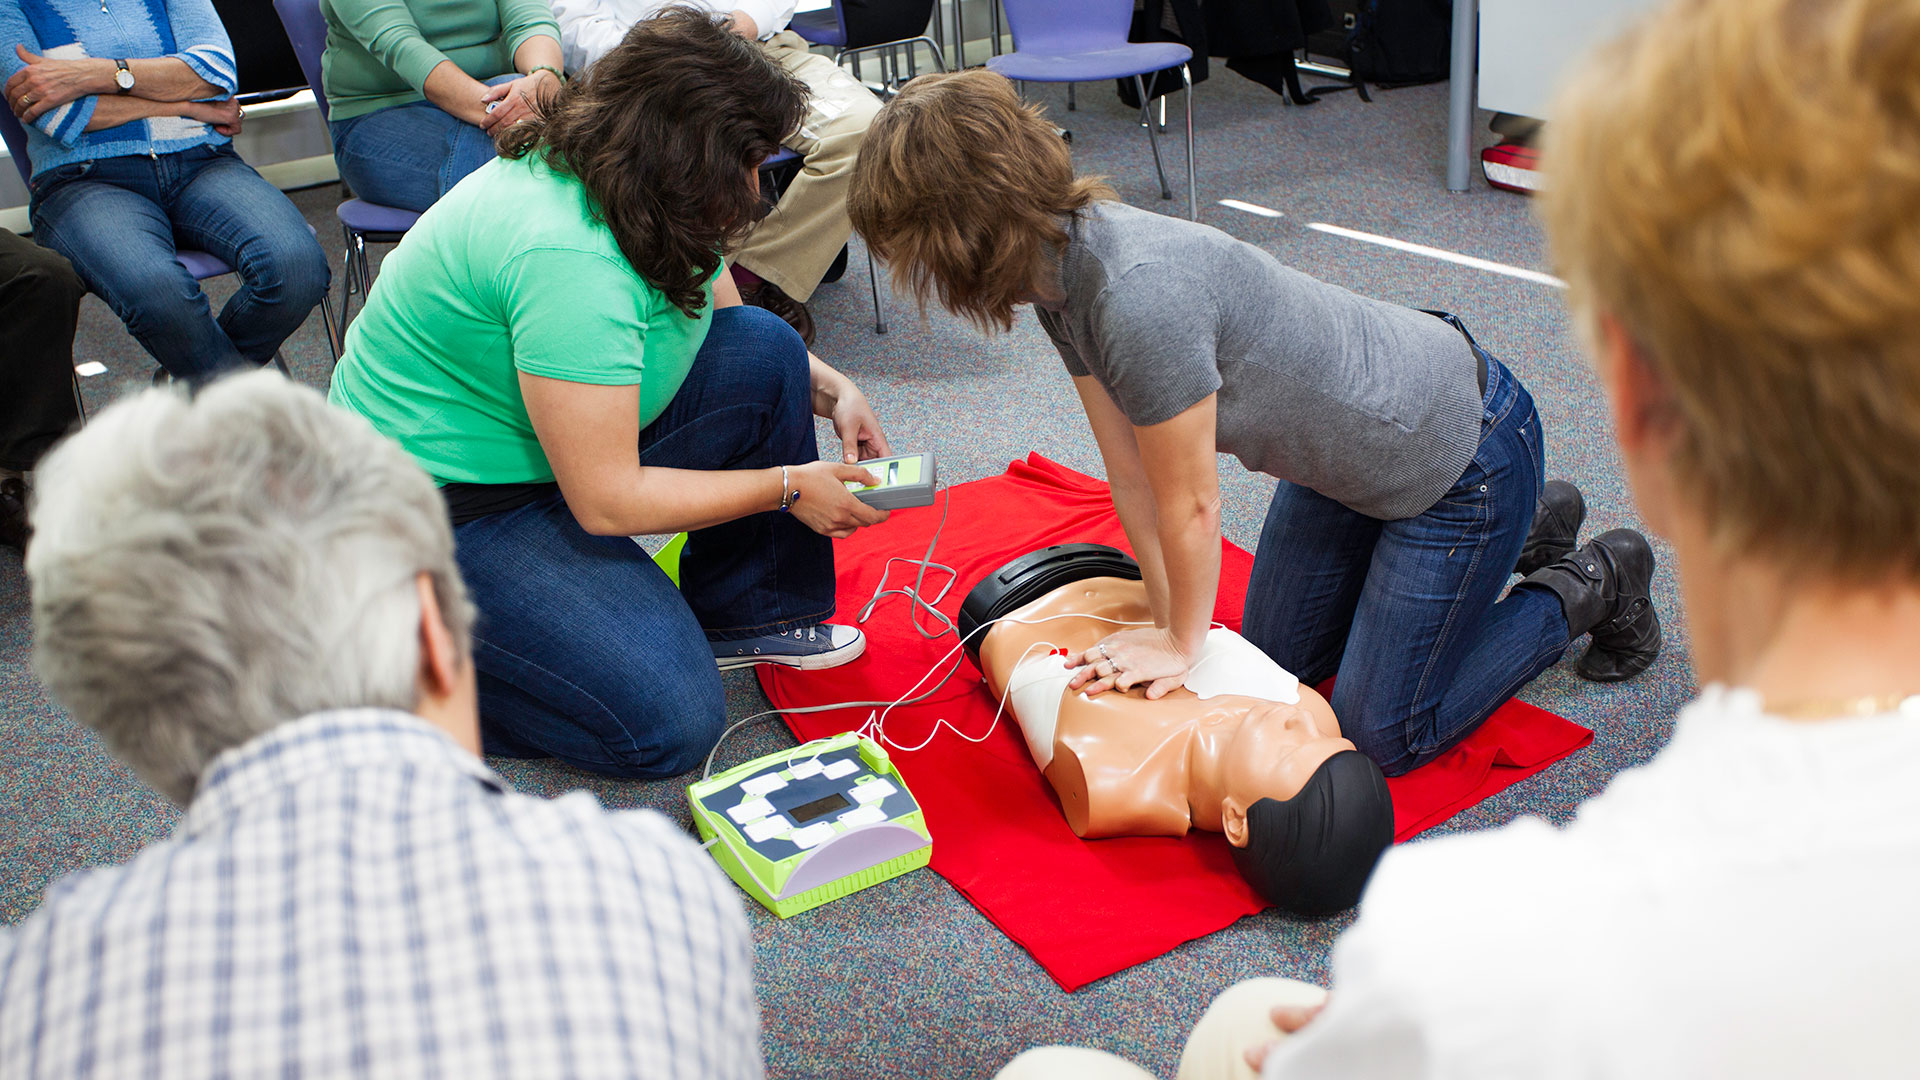 Aprender primeros auxilios salva vidas en una emergencia, cualquier persona puede capacitarse (Gettyimages)